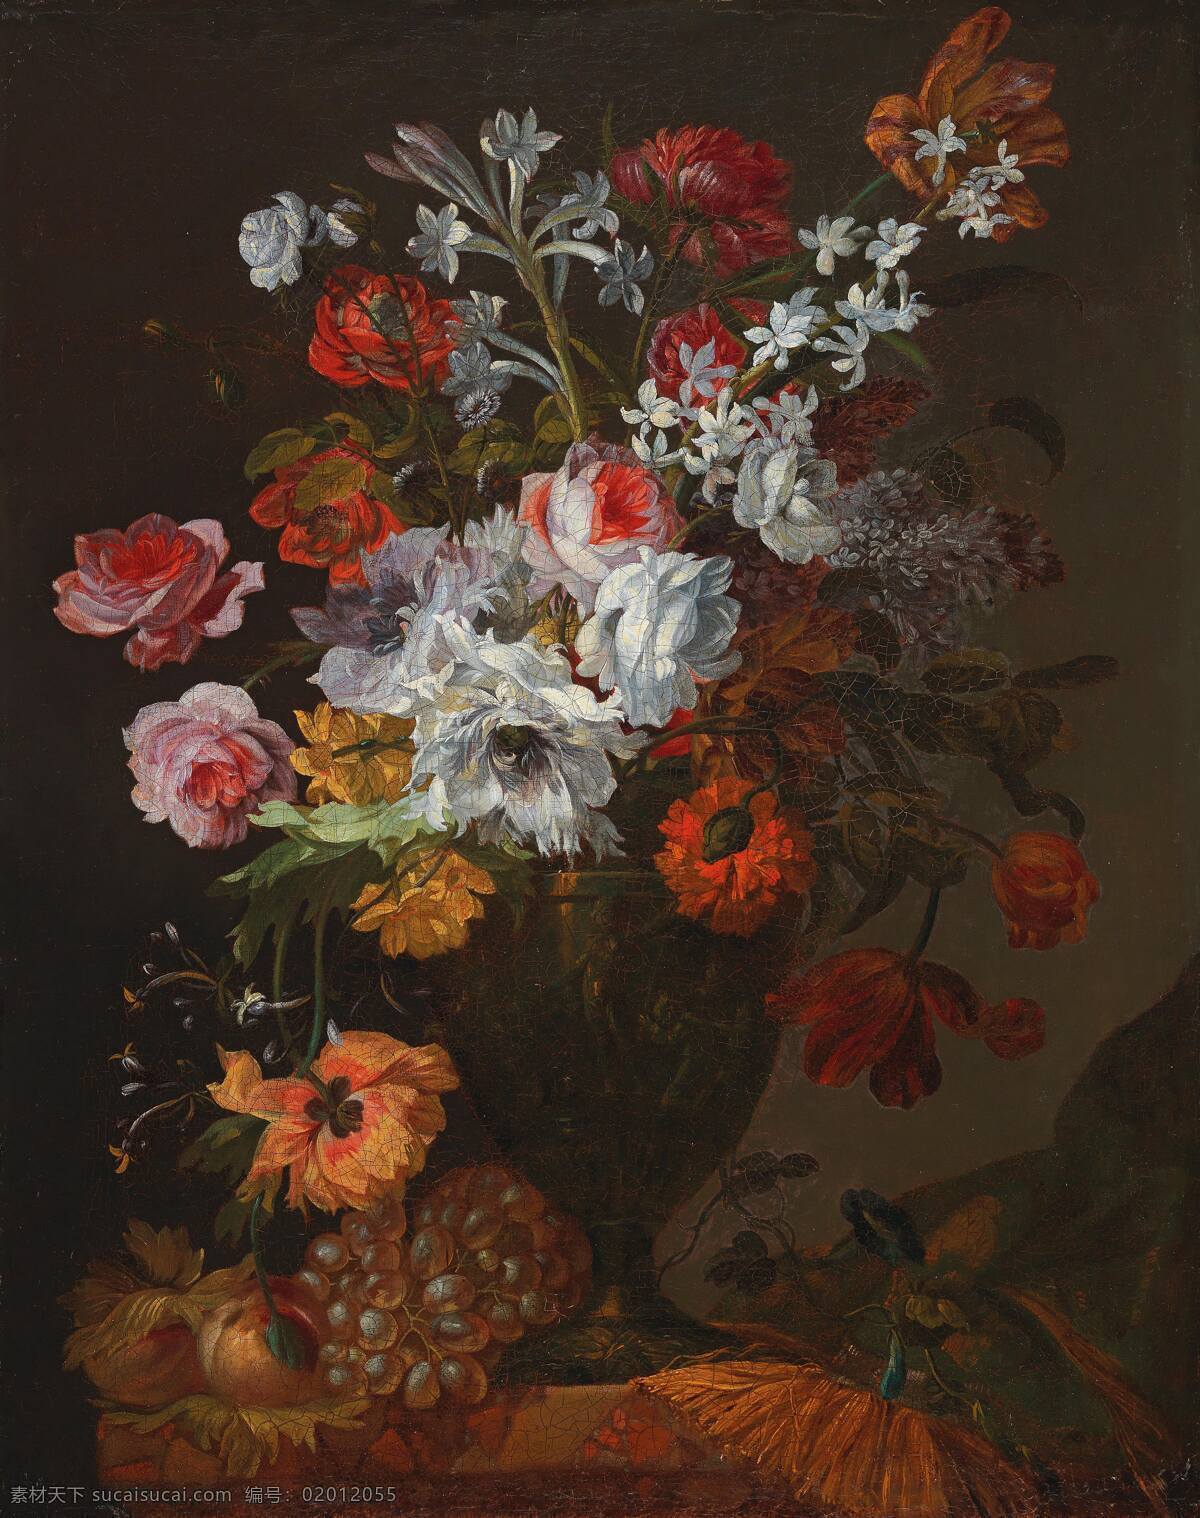 巴普 蒂斯特 莫雷尔 作品 比利时画家 静物鲜花 康乃馨 水仙 玫瑰 混搭 古典油画 油画 文化艺术 绘画书法